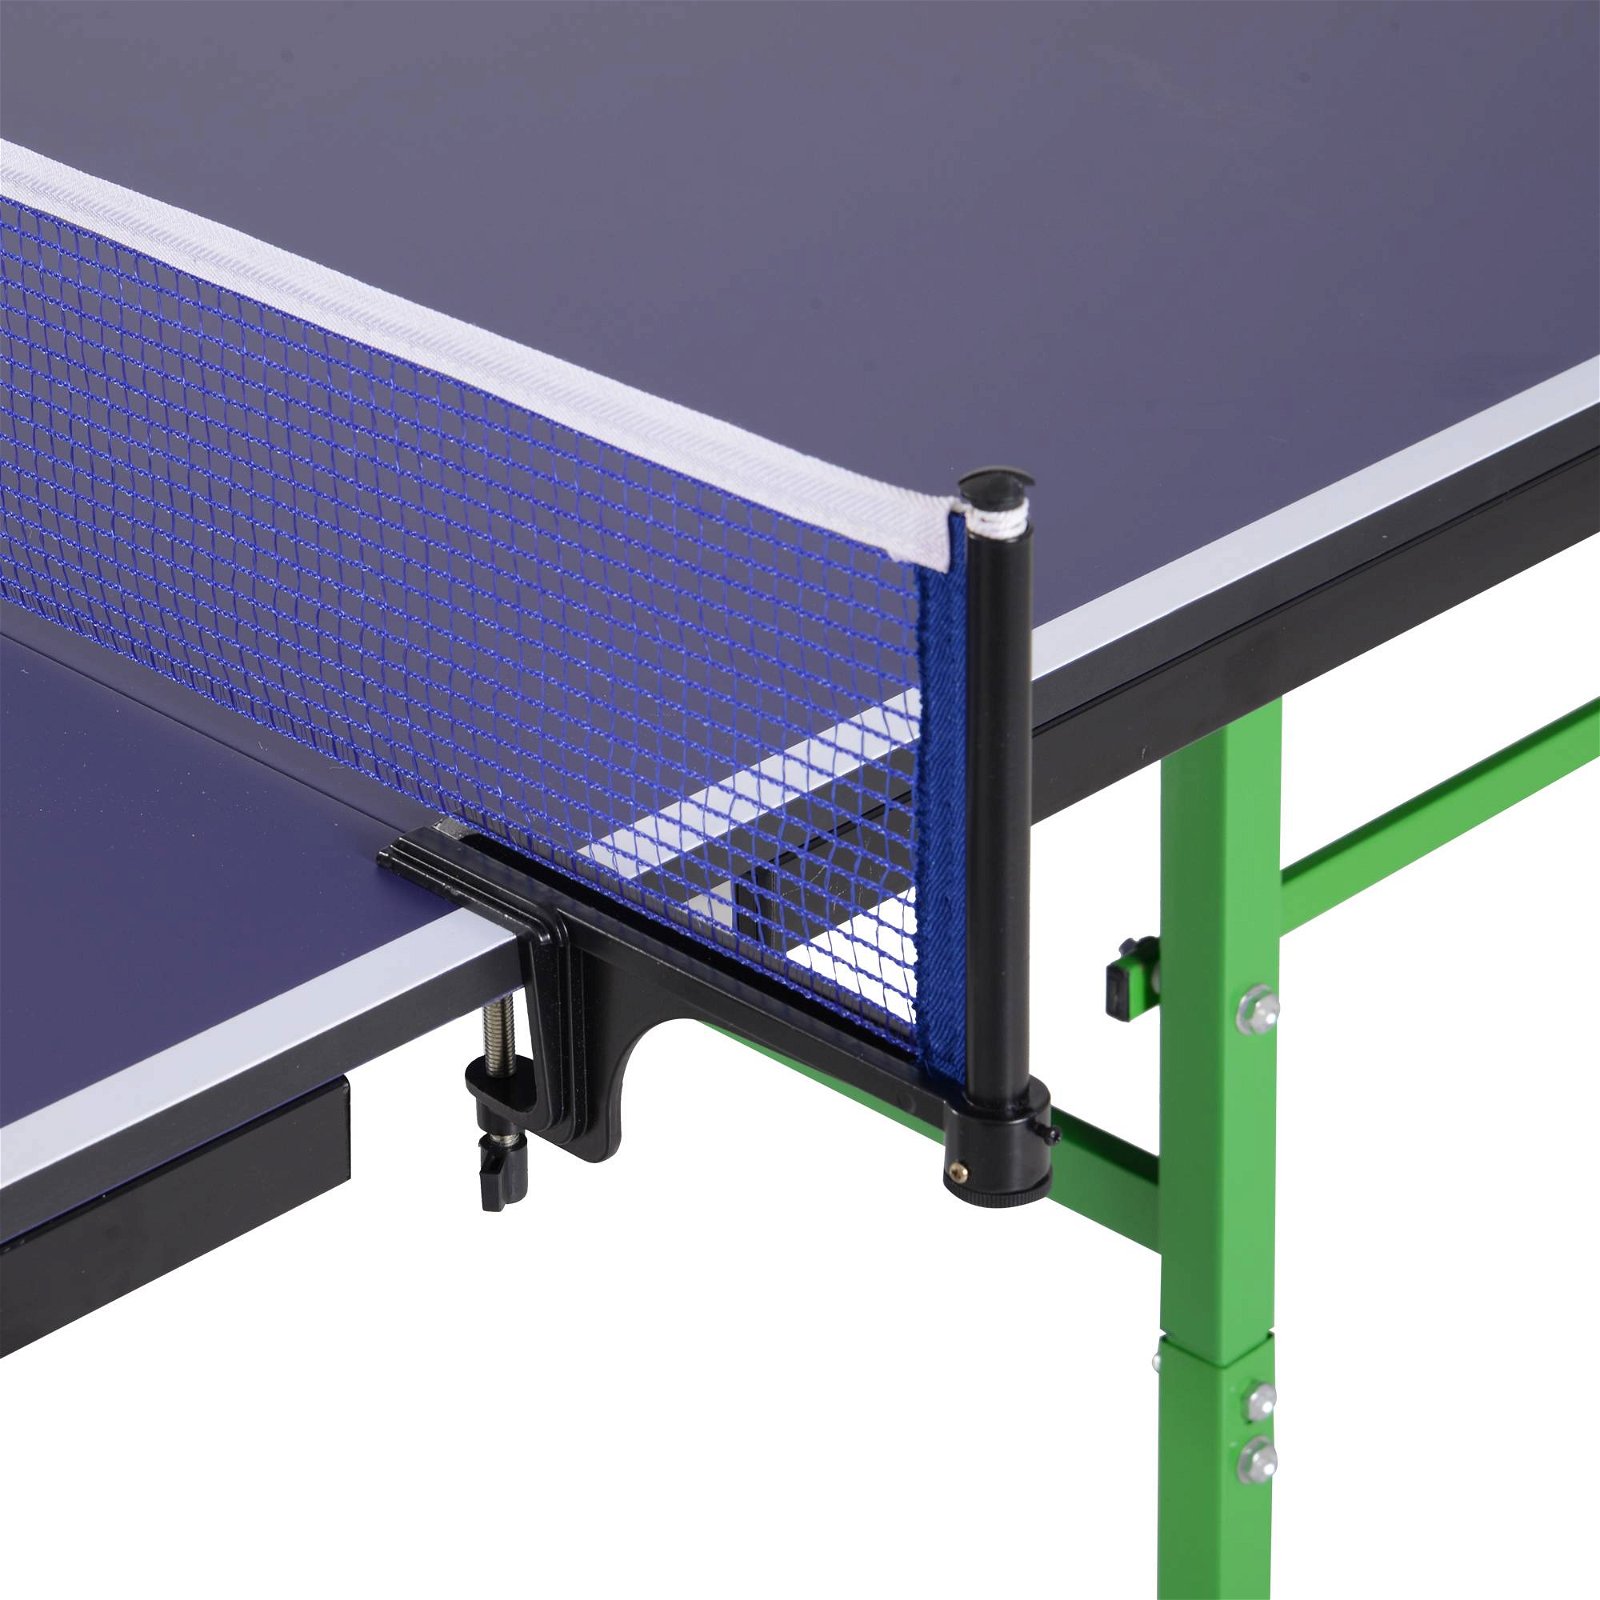 Mesa de Ping Pong Dobrável com Rodas para Interior e Exterio